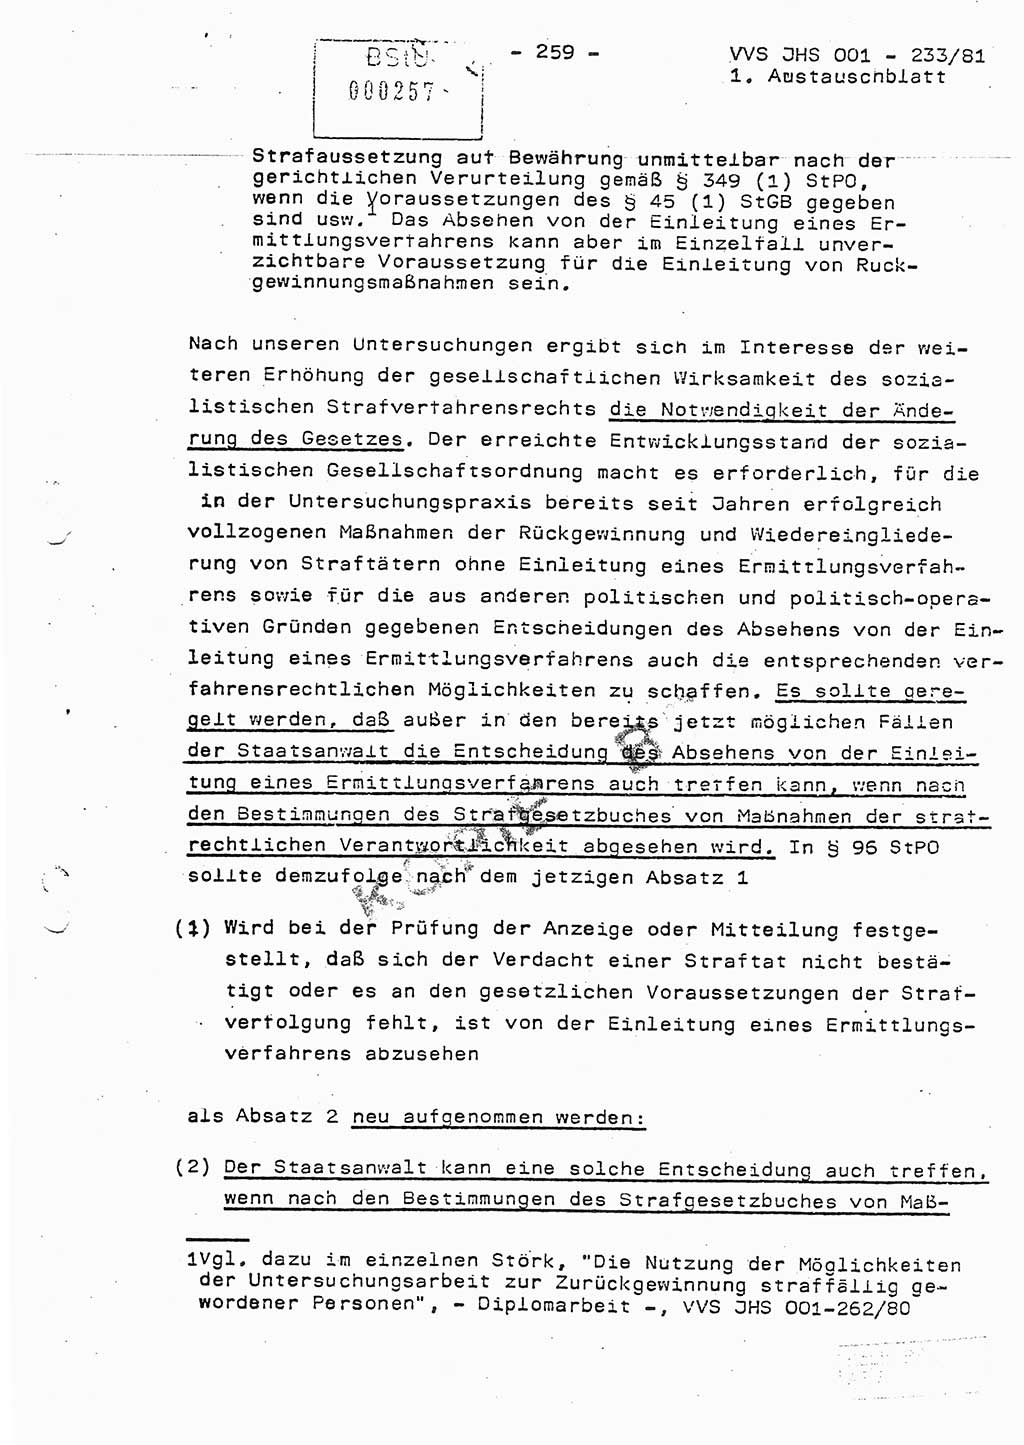 Dissertation Oberstleutnant Horst Zank (JHS), Oberstleutnant Dr. Karl-Heinz Knoblauch (JHS), Oberstleutnant Gustav-Adolf Kowalewski (HA Ⅸ), Oberstleutnant Wolfgang Plötner (HA Ⅸ), Ministerium für Staatssicherheit (MfS) [Deutsche Demokratische Republik (DDR)], Juristische Hochschule (JHS), Vertrauliche Verschlußsache (VVS) o001-233/81, Potsdam 1981, Blatt 259 (Diss. MfS DDR JHS VVS o001-233/81 1981, Bl. 259)